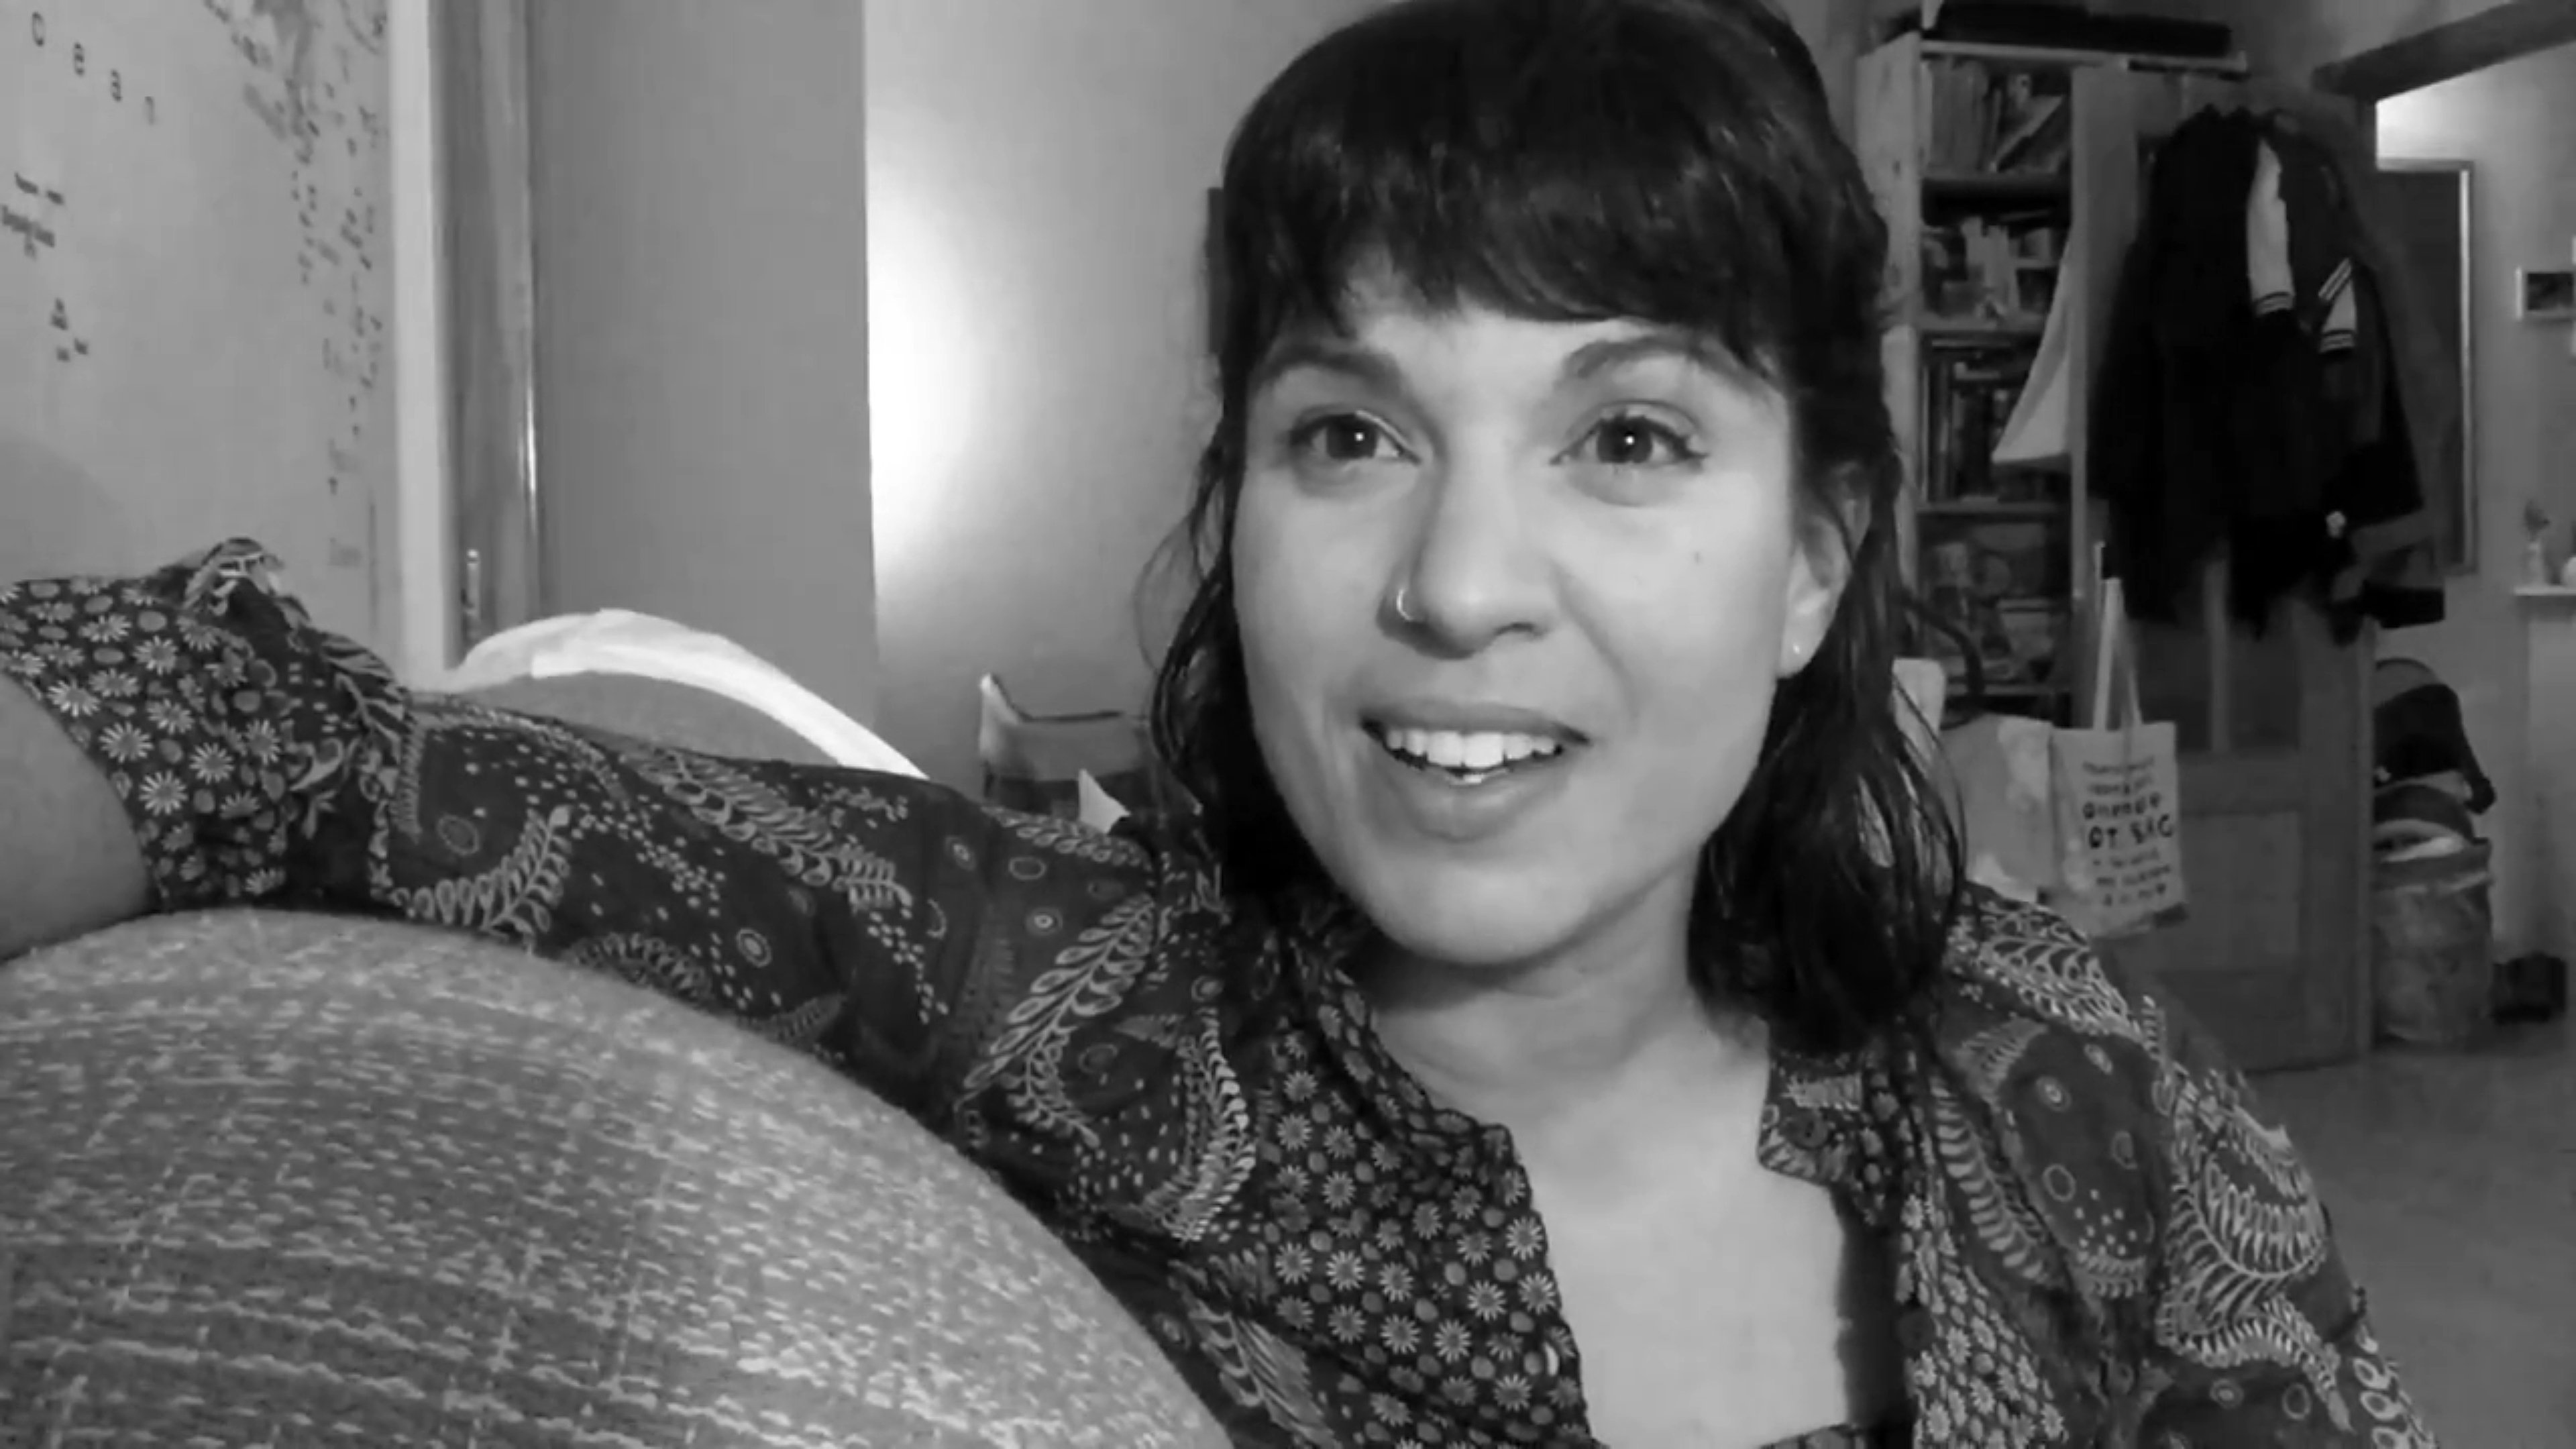 VÍDEO | Bea Talegón: "On no hi ha justícia"